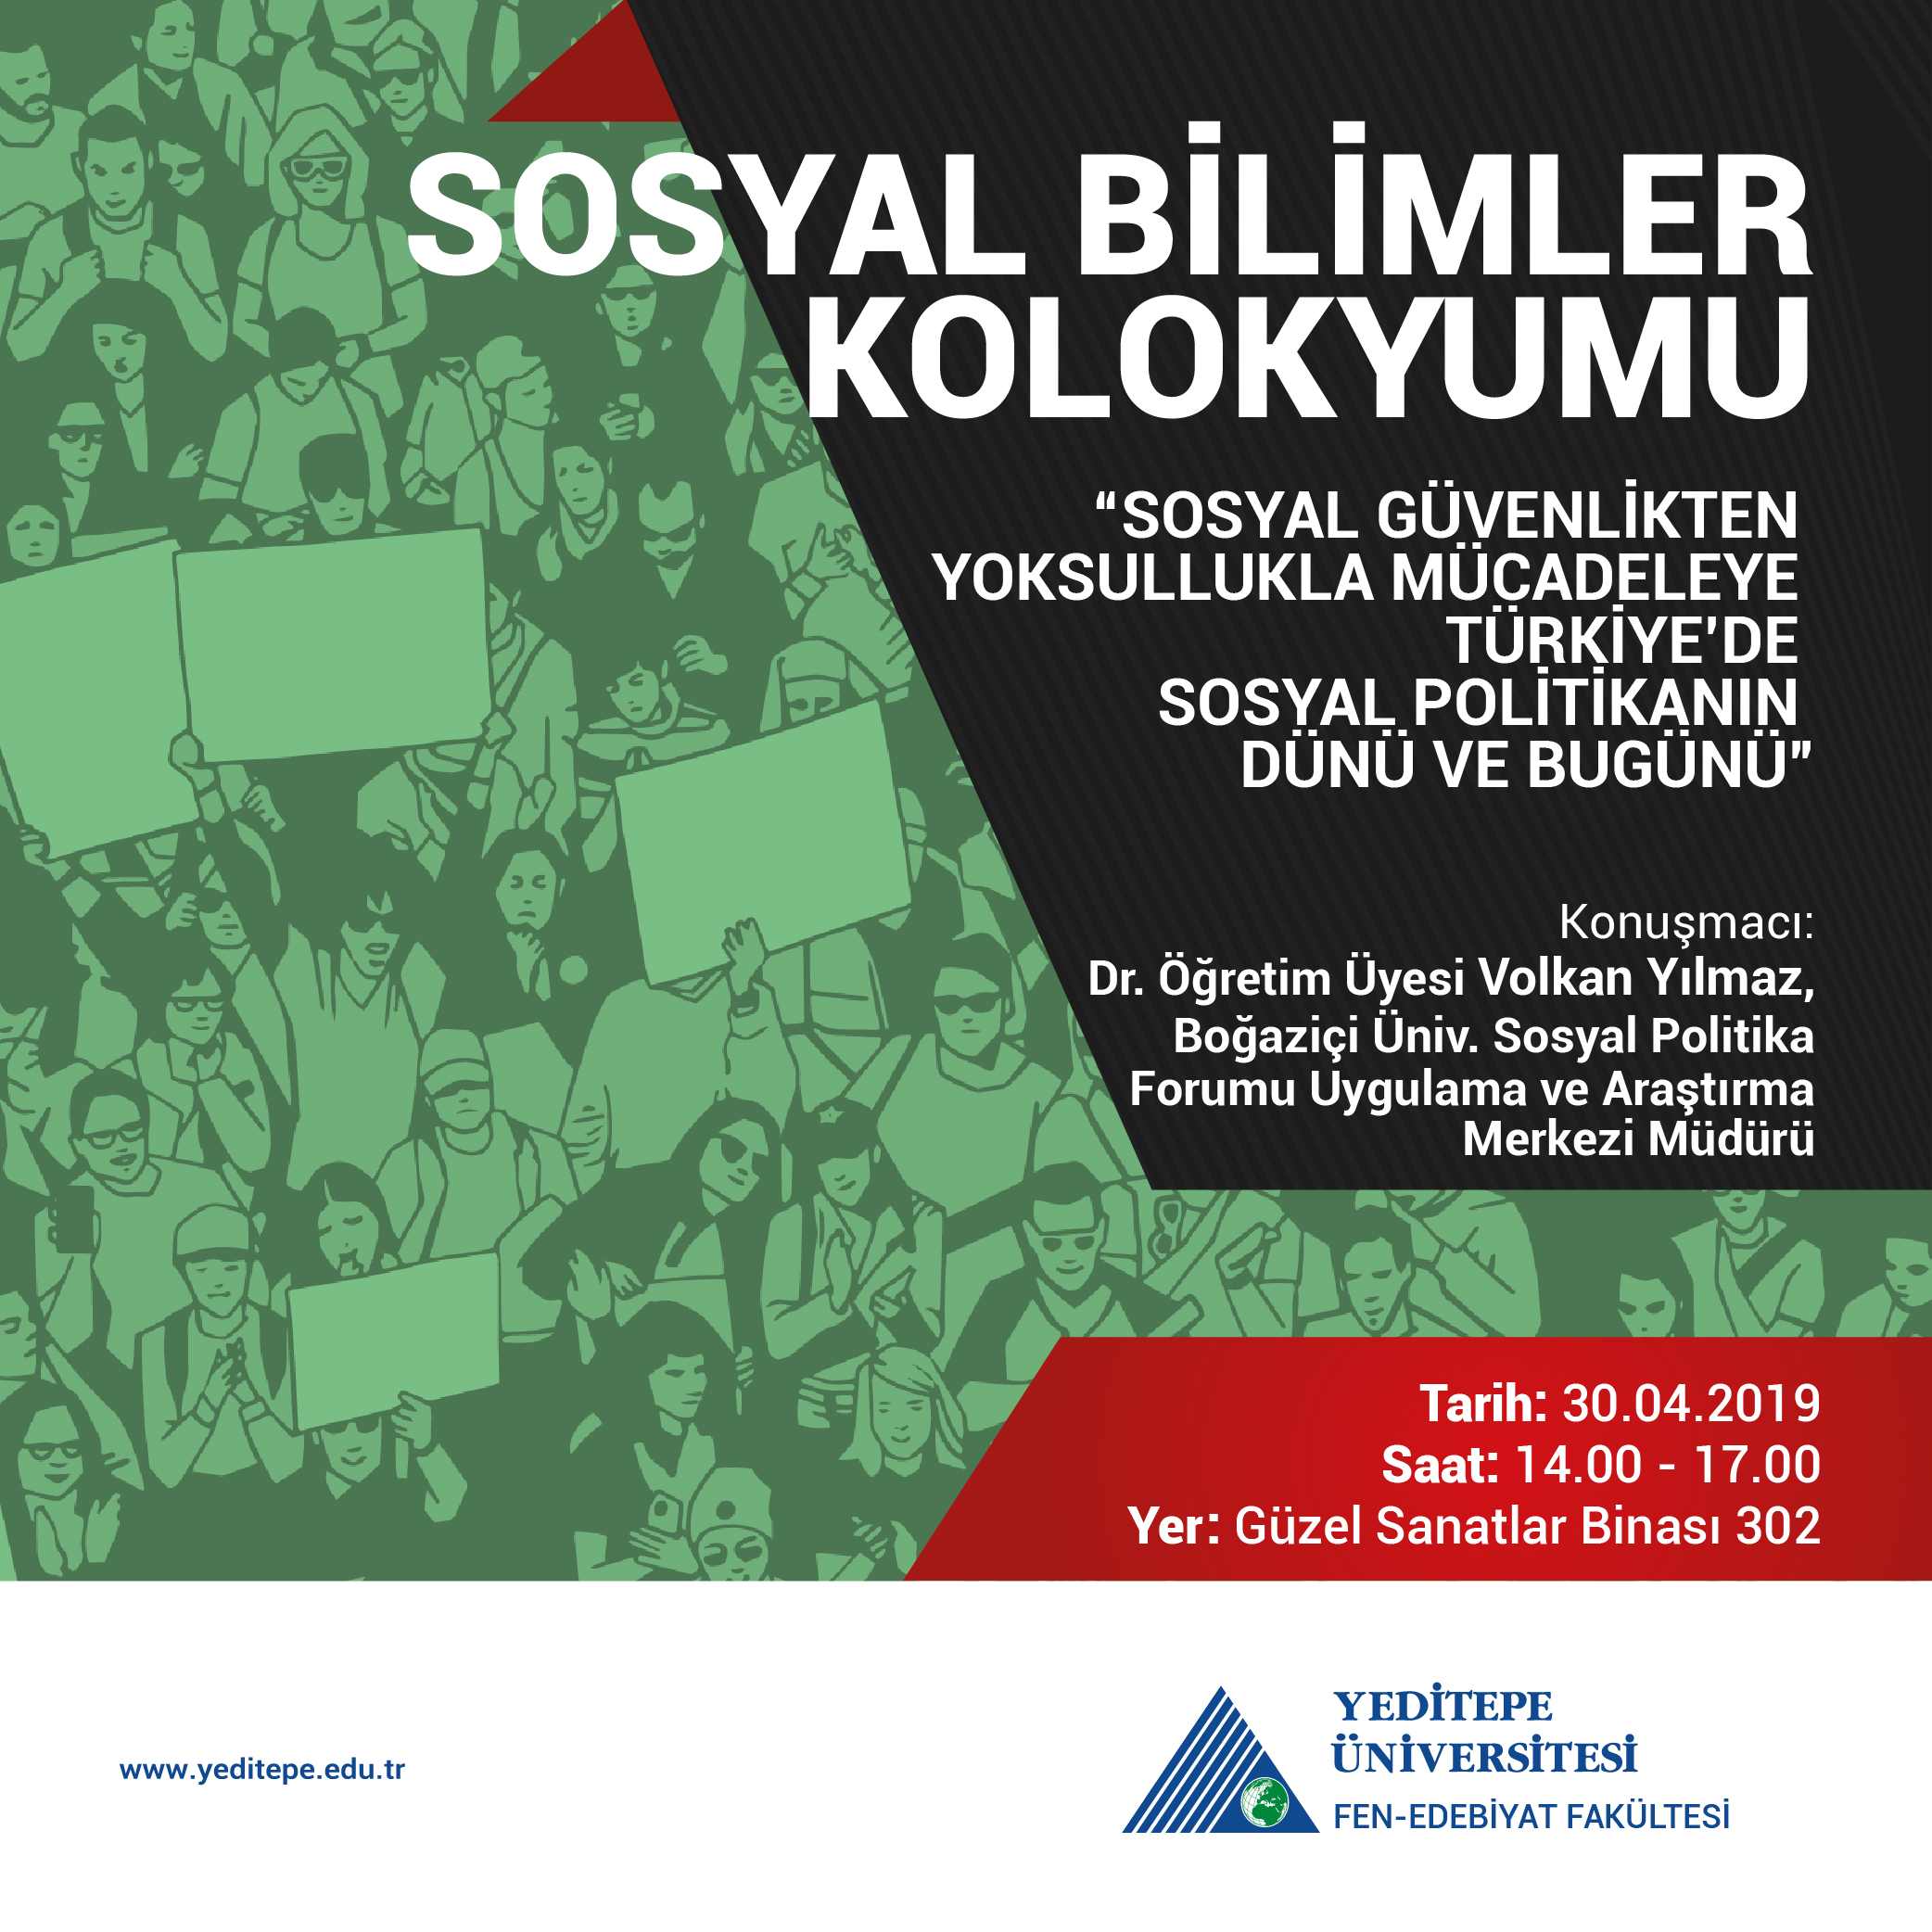 Sosyal Bilimler Kolokyumu | "Sosyal Güvenlikten Yoksullukla Mücadeleye Türkiye'de Sosyal Politikanın Dünü ve Bugünü